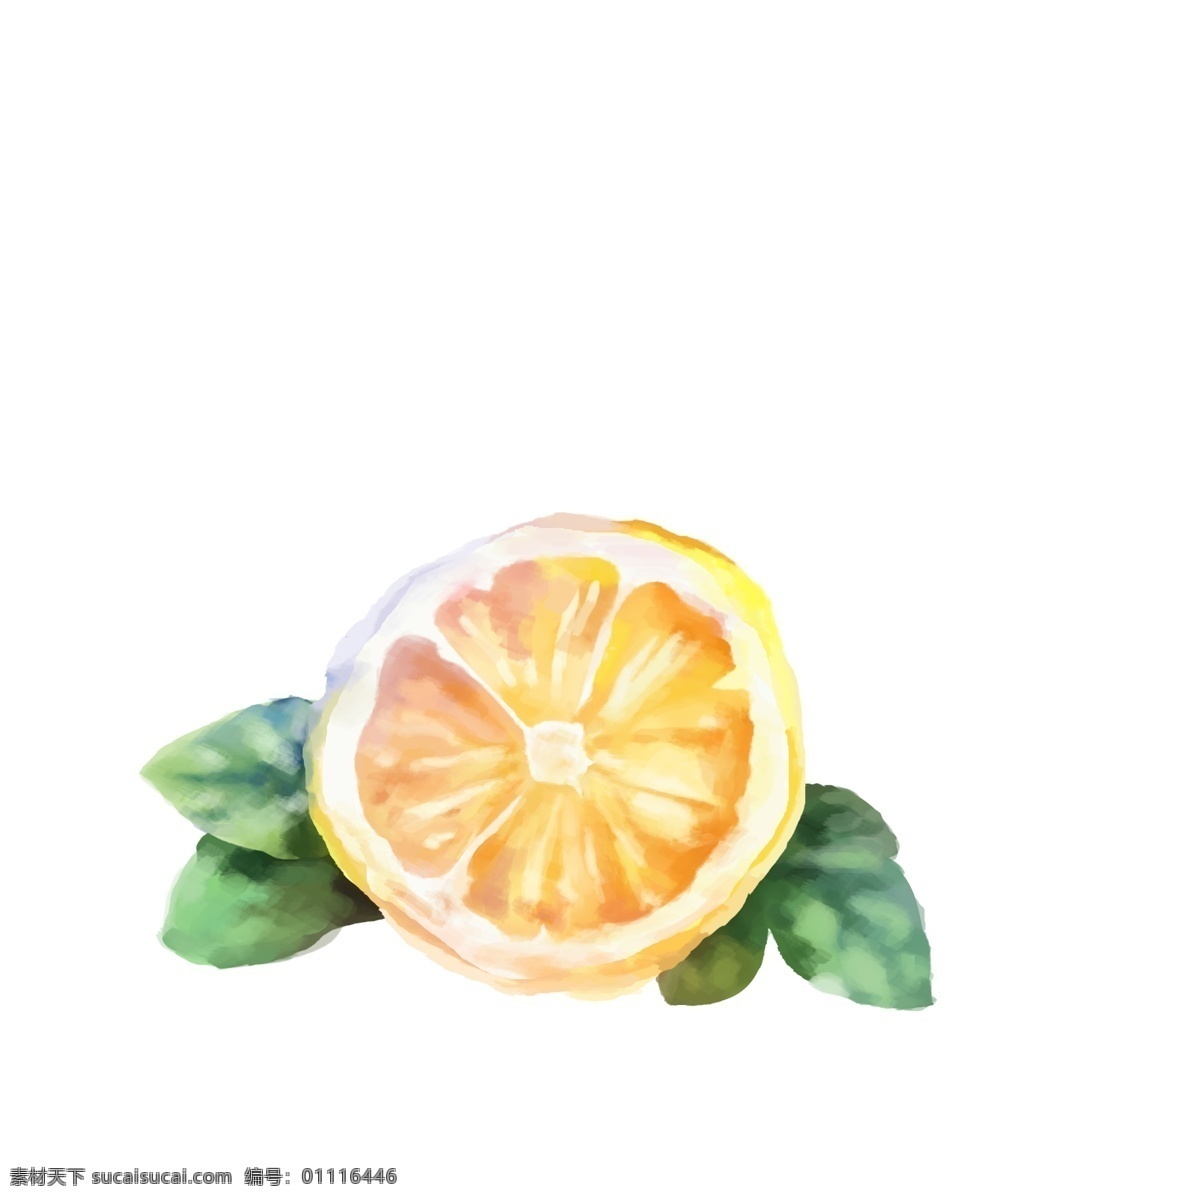 鼠标手绘柠檬 手绘素材 水果 柠檬 分层 鼠绘 蜂蜜 蜜蜂 橙子 玫瑰 花儿 矢量花朵 花素材 叶子 矢量花 生物世界 花草